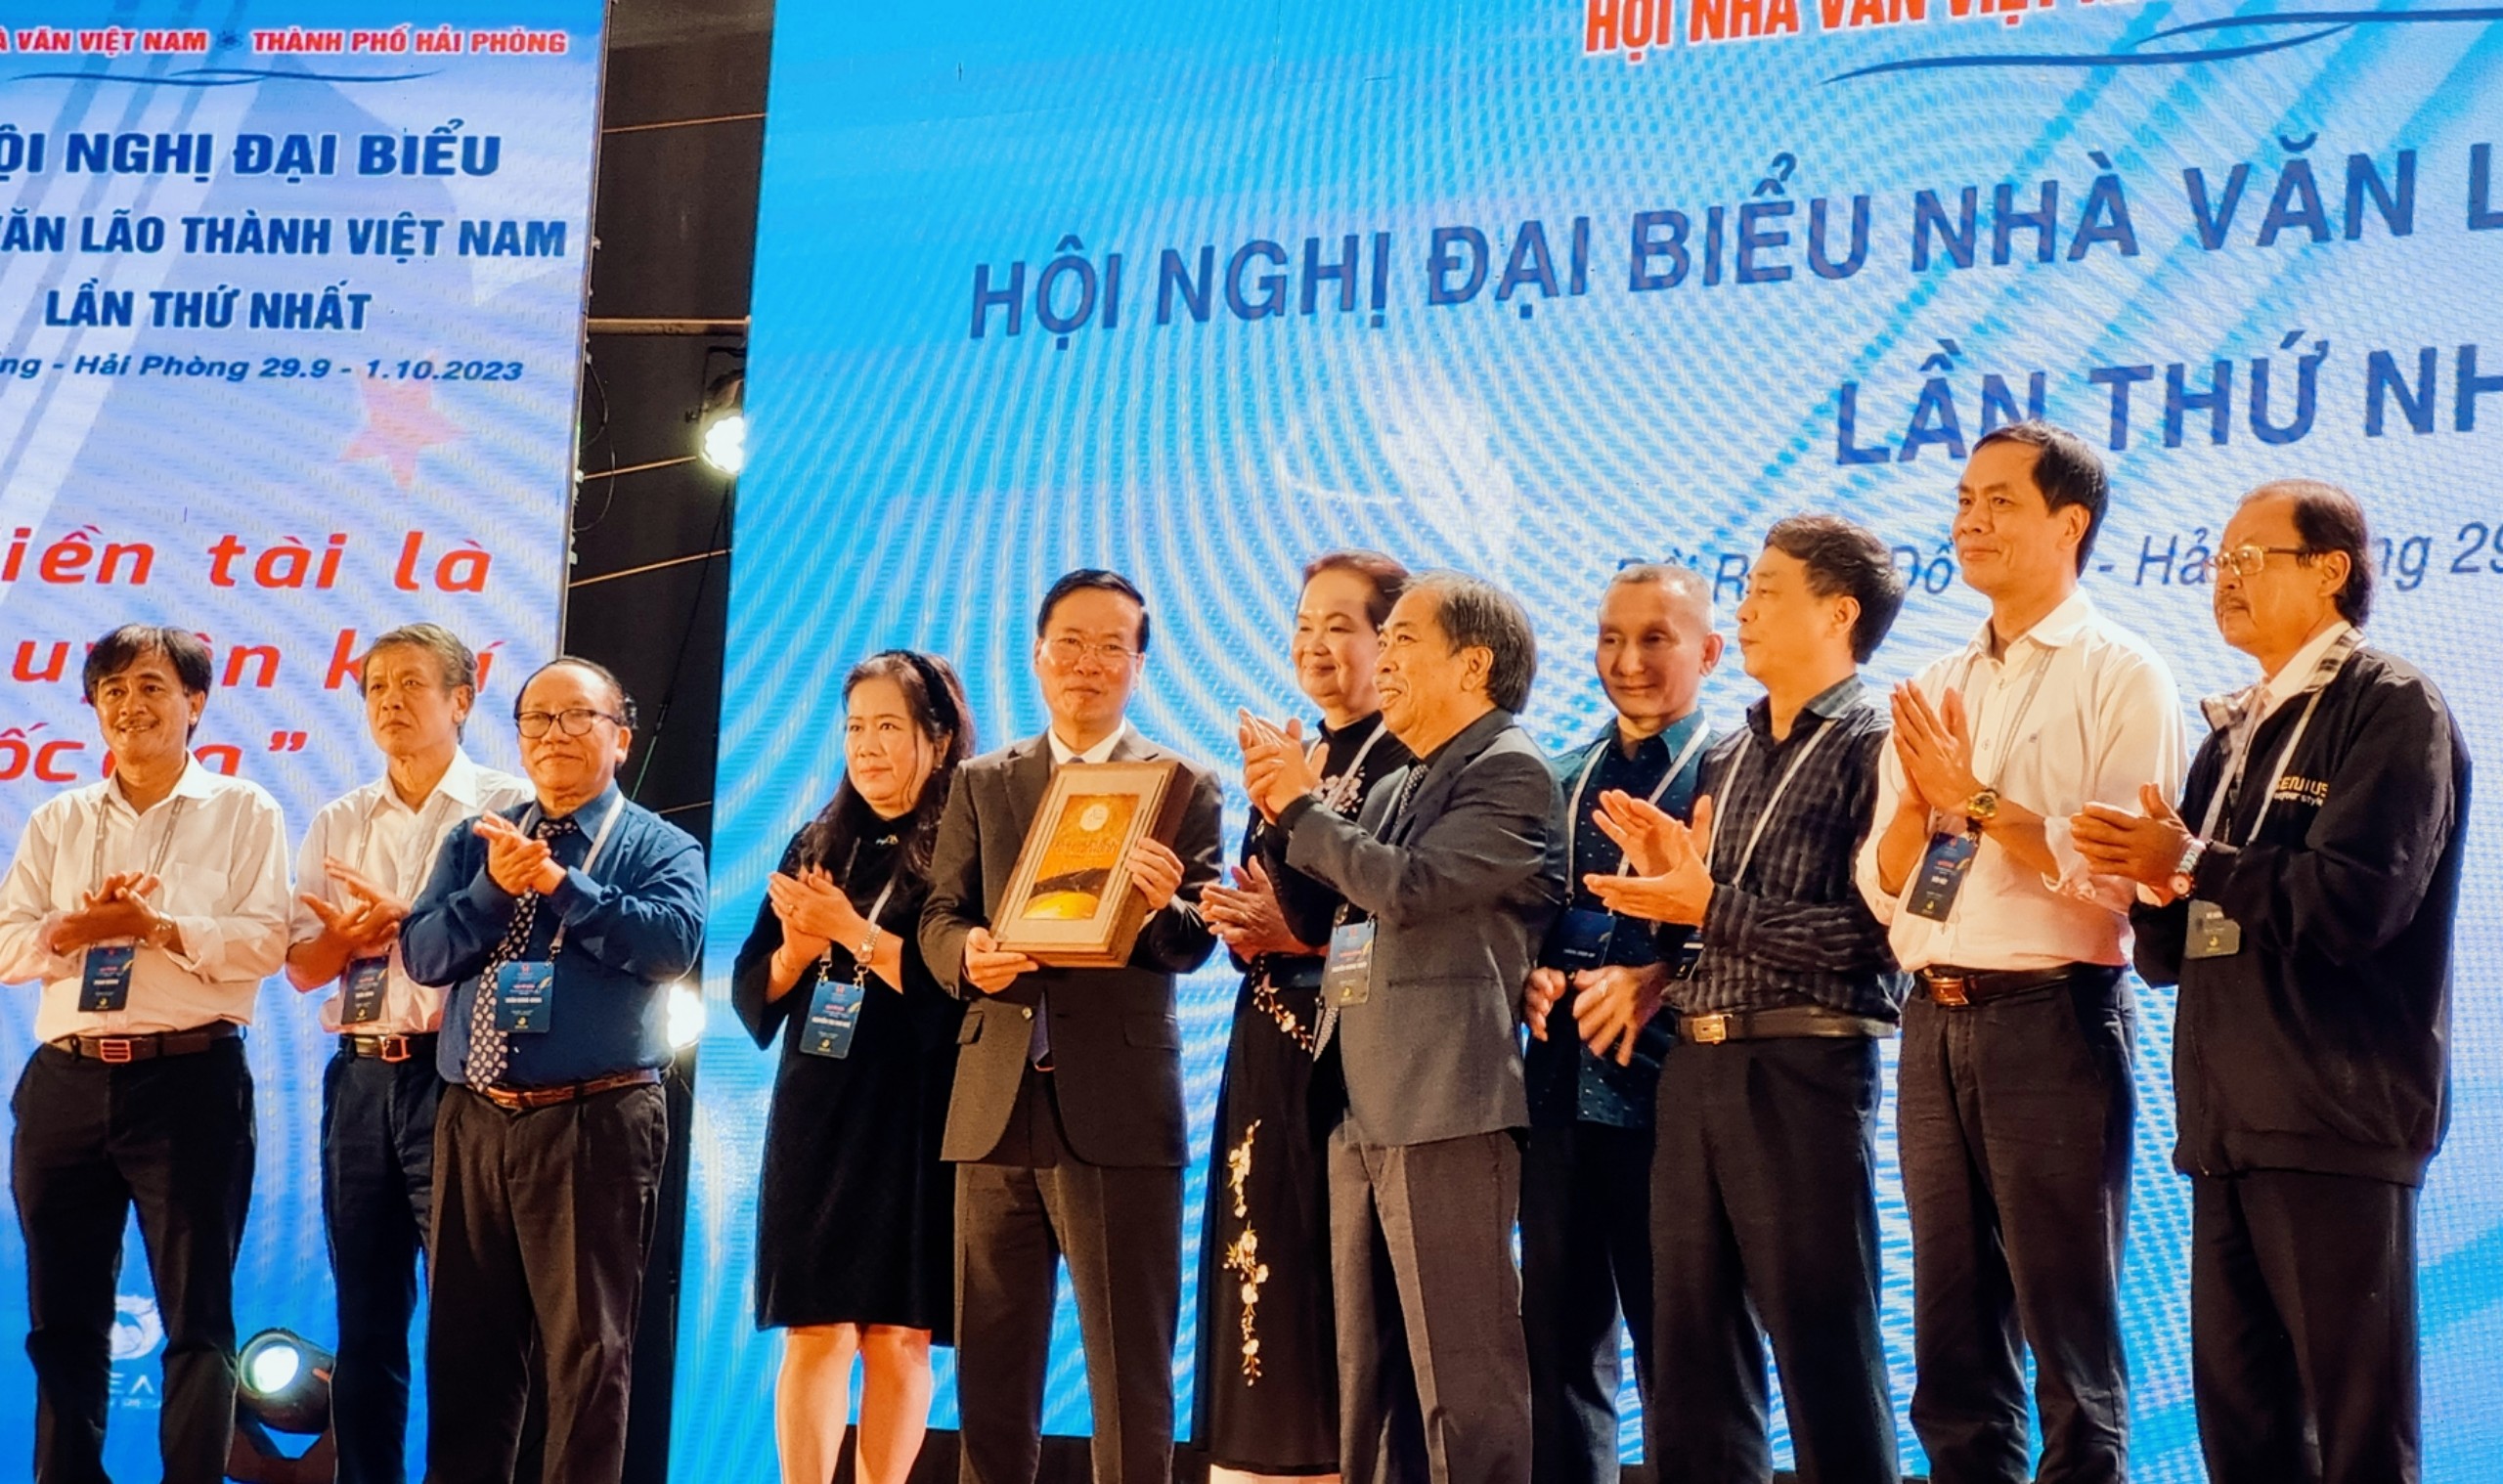 Toàn văn phát biểu của Chủ tịch nước Võ Văn Thưởng tại Hội nghị đại biểu nhà văn lão thành Việt Nam lần thứ nhất - 2